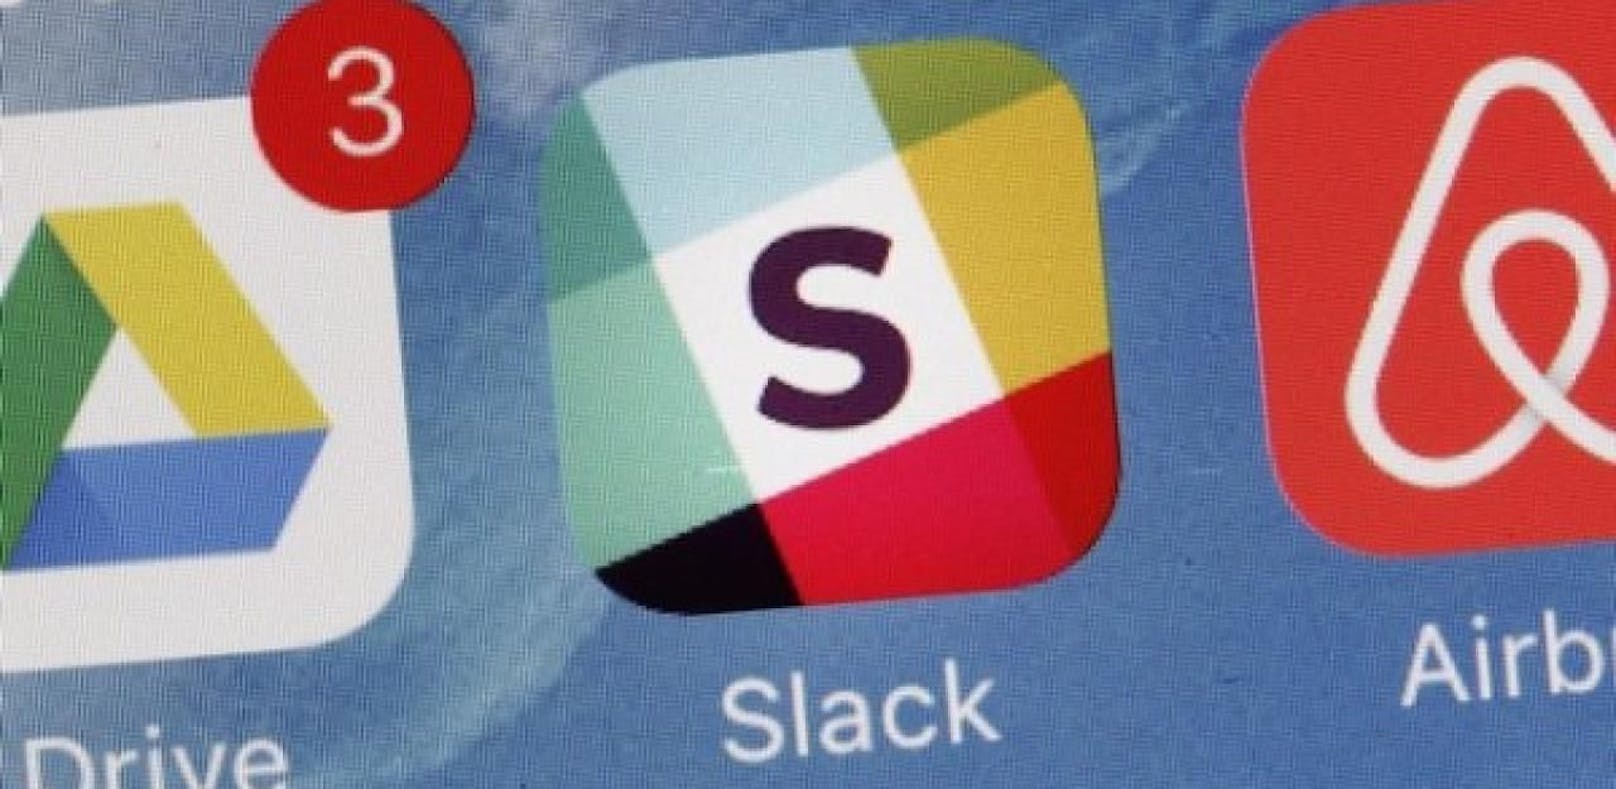 Die 2013 veröffentlichte Chat-App Slack wird täglich von zehn Millionen Mitarbeitern genutzt. Jetzt geht sie an die New Yorker Börse.